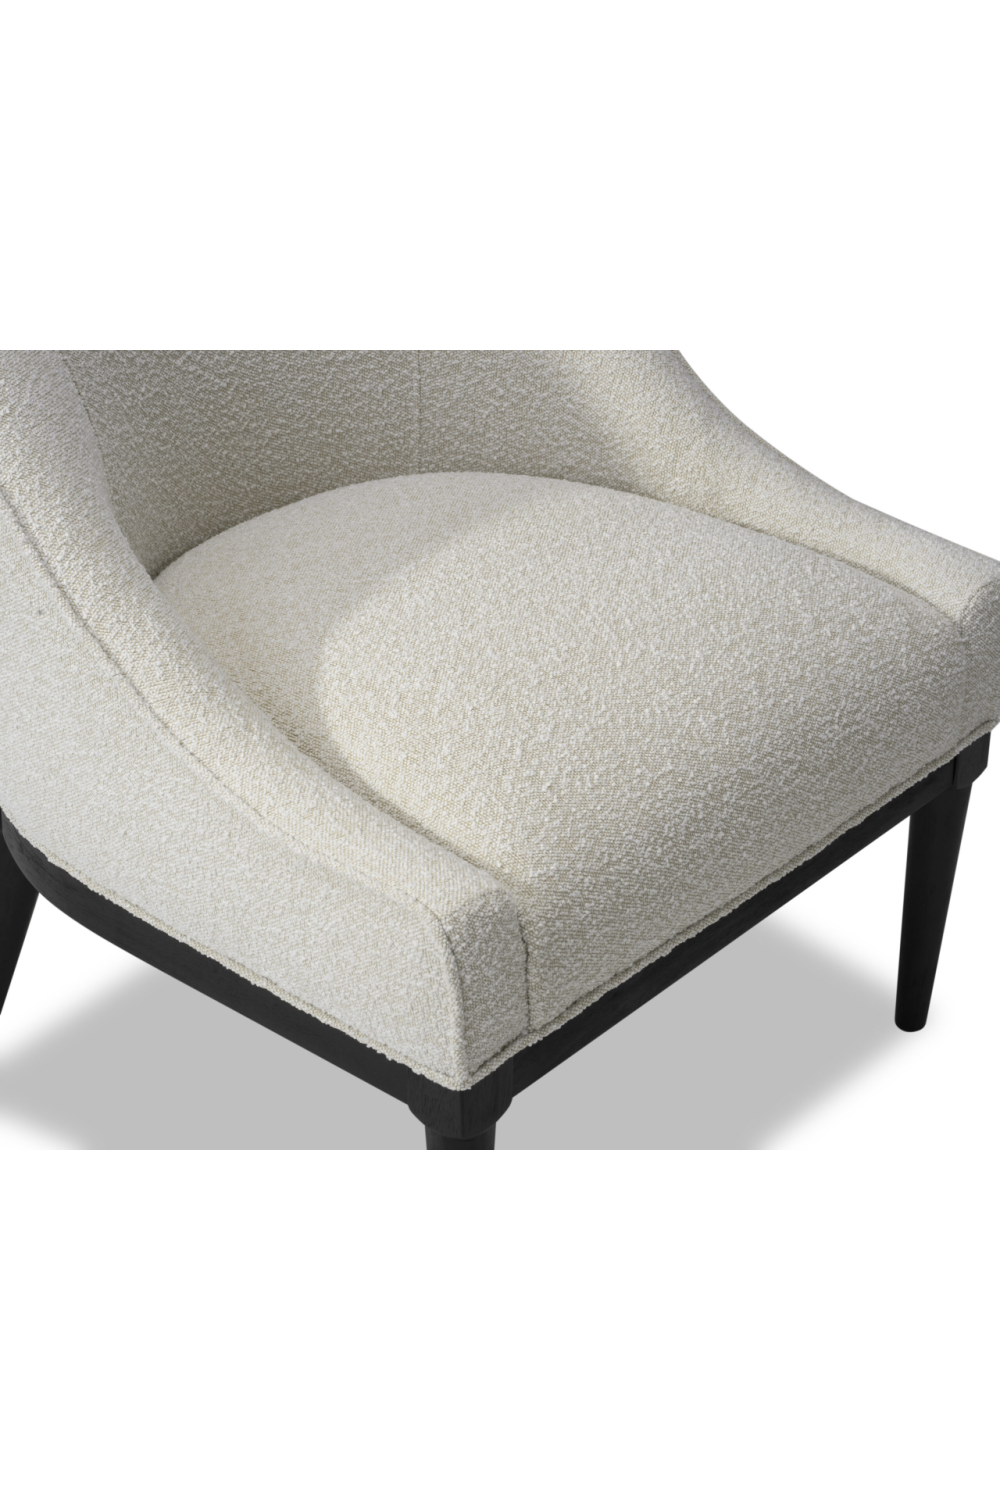 Modern Sloped Ocassional Chair | Liang & Eimil Vegas | Oroa.com